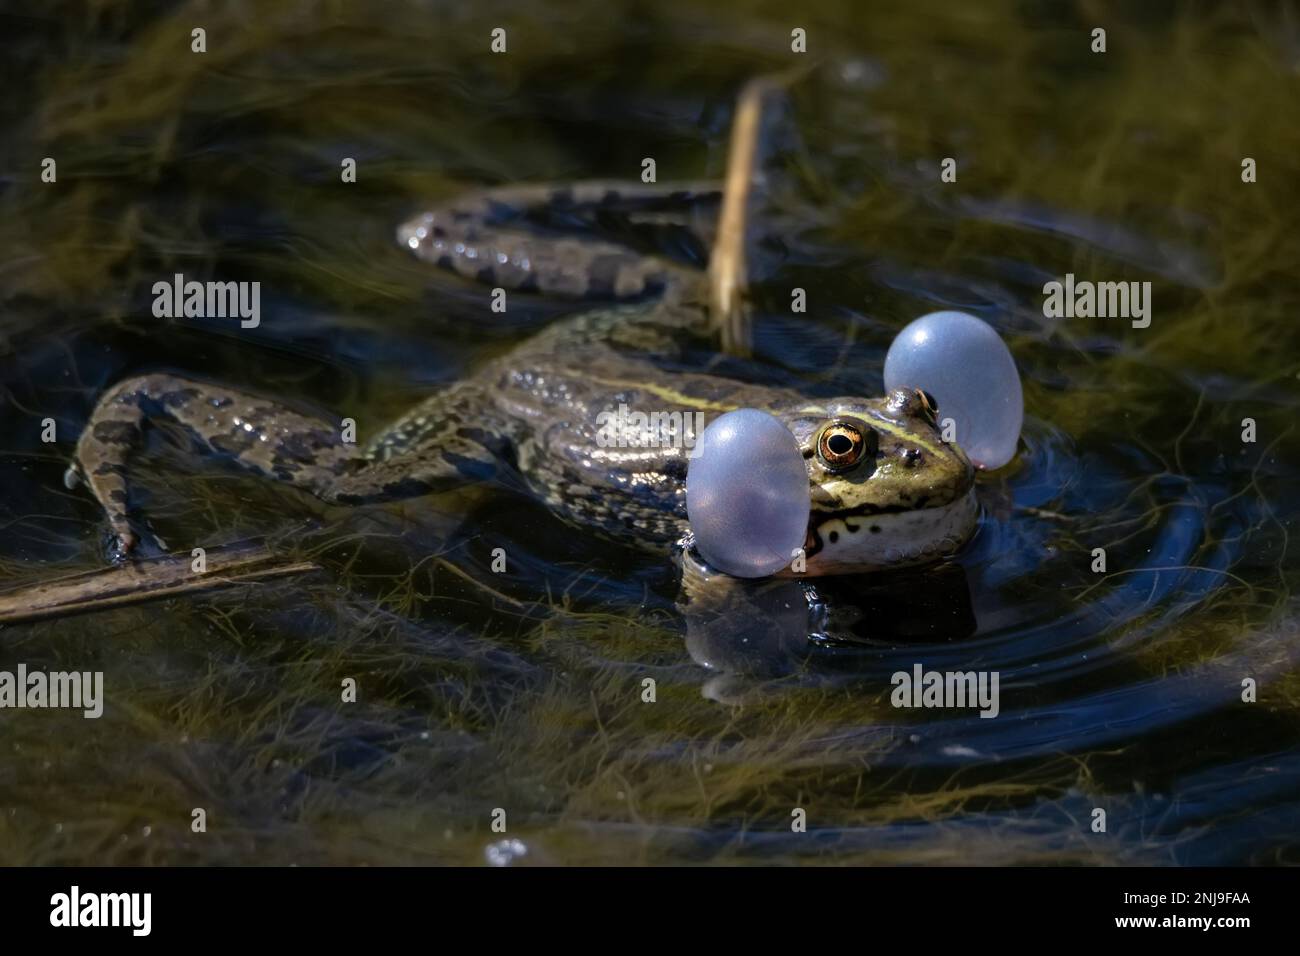 Sumpffrosch oder Pelophylax ridibundus singen im Wasser. Paarungsritual mit Stimmböcken Stockfoto